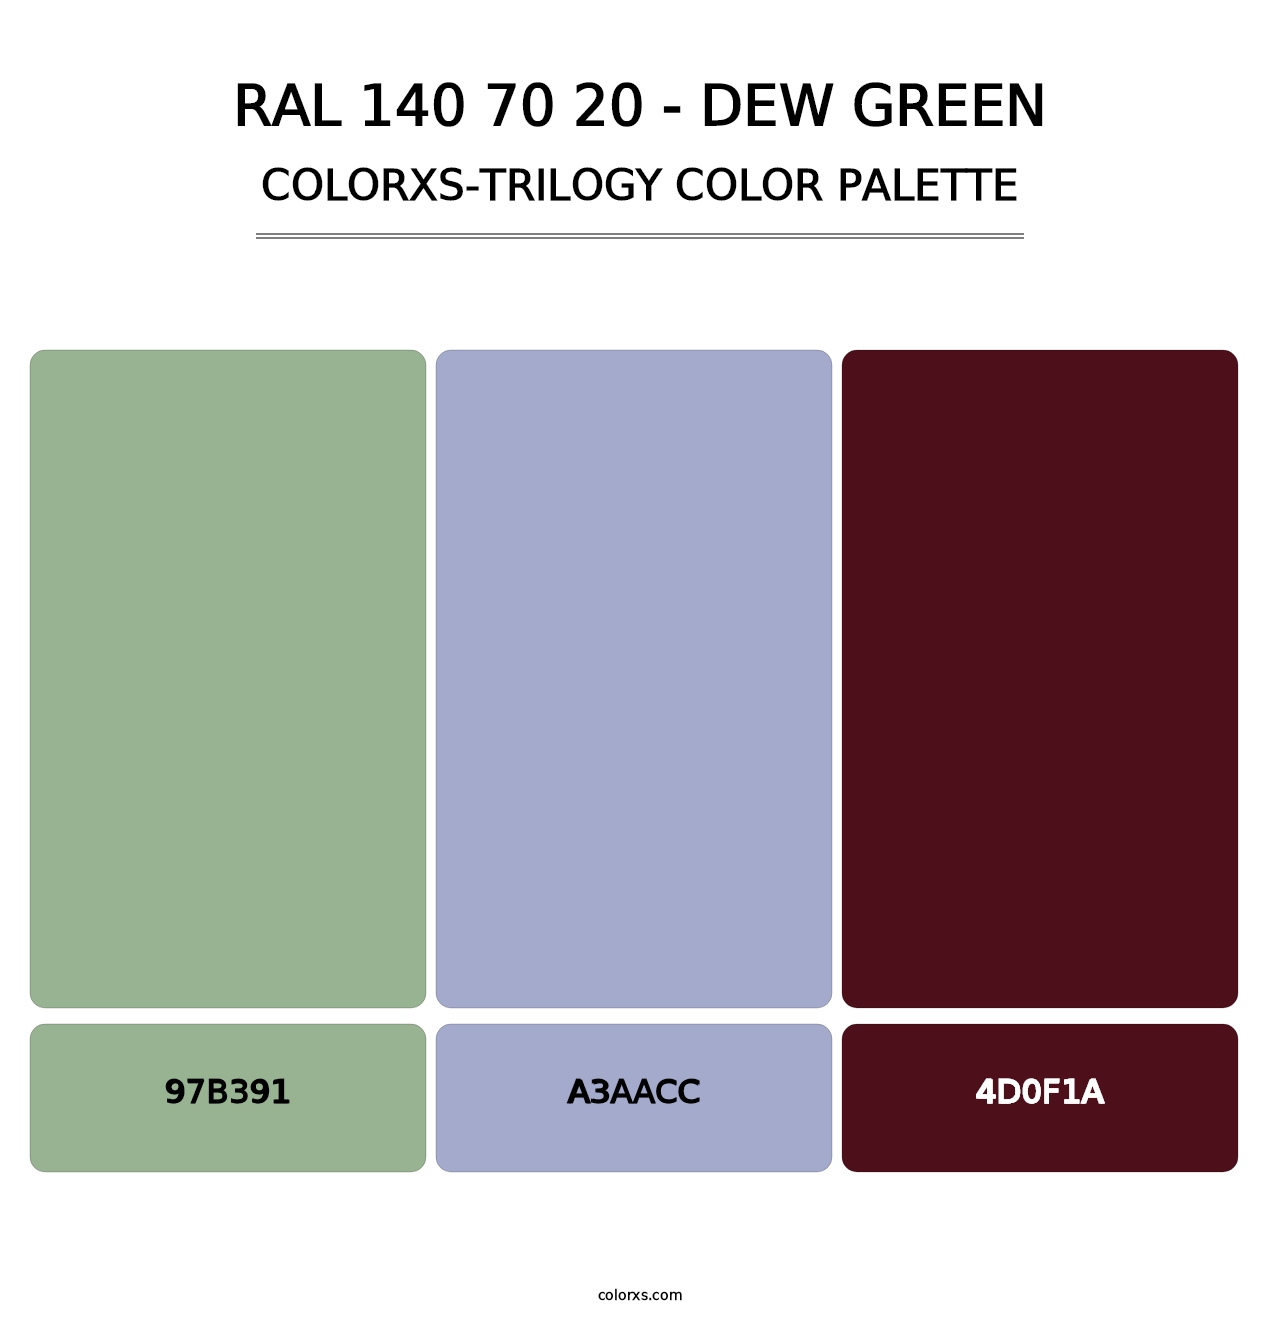 RAL 140 70 20 - Dew Green - Colorxs Trilogy Palette